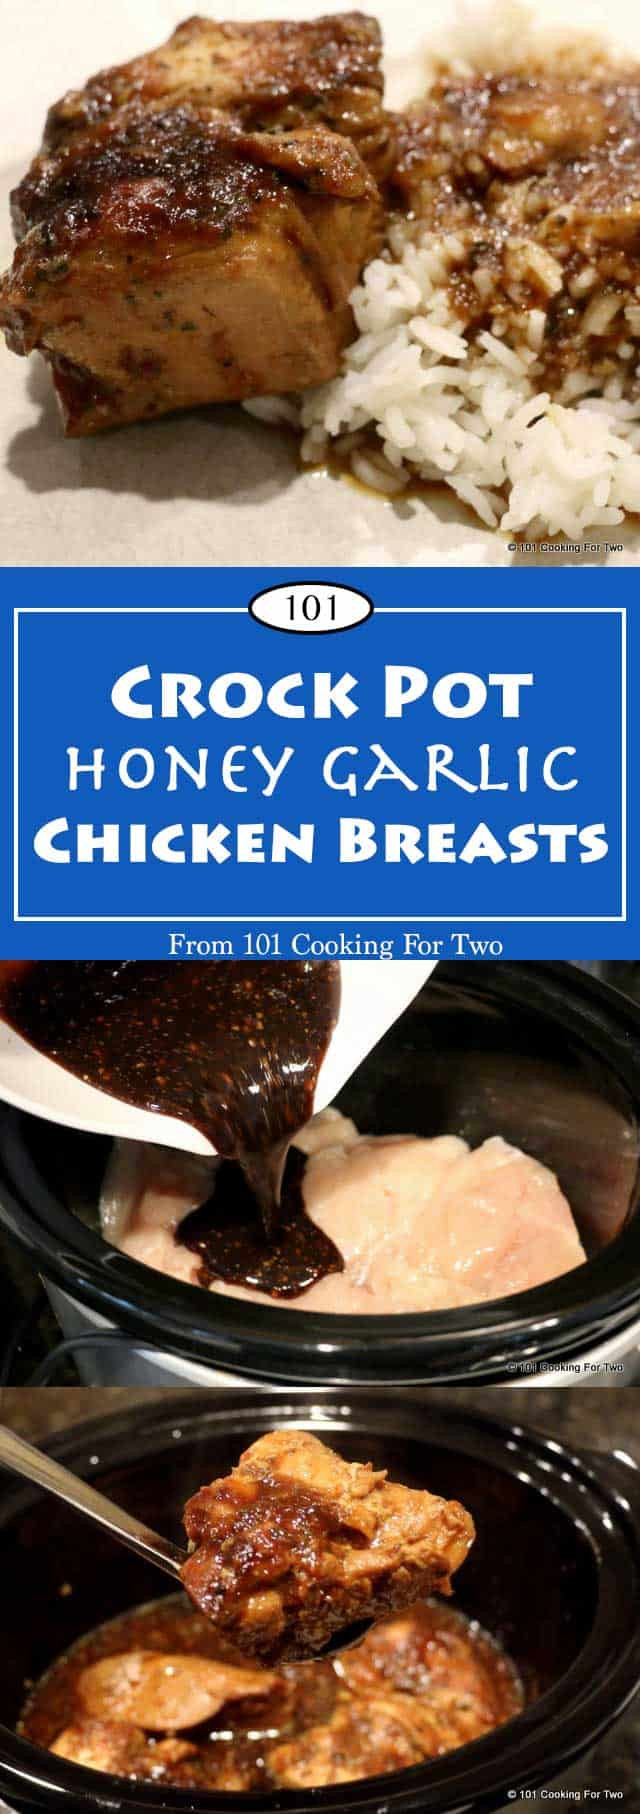 Low Fat Chicken Crock Pot Recipes
 Crock Pot Honey Garlic Chicken Breast